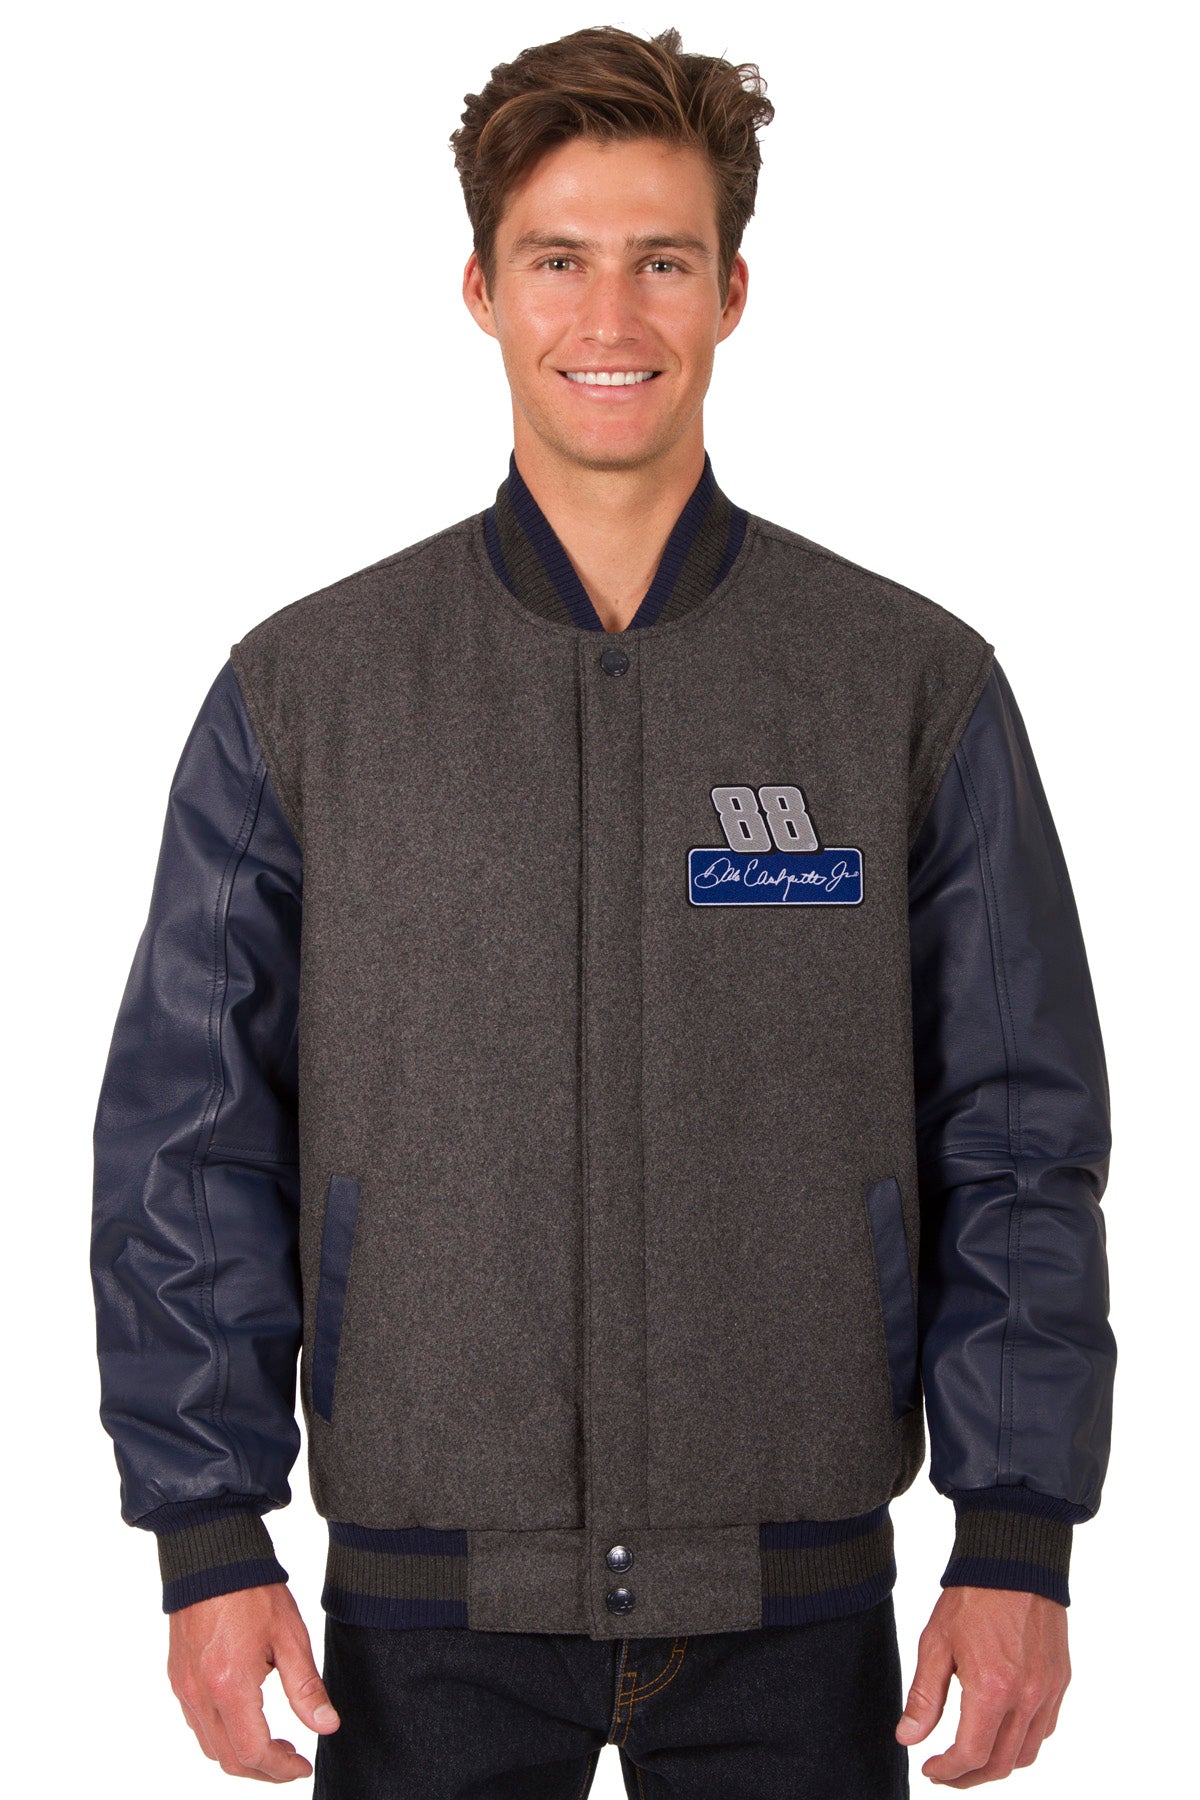 Wool/Leather Detroit Pistons Varsity Jacket - Jackets Expert